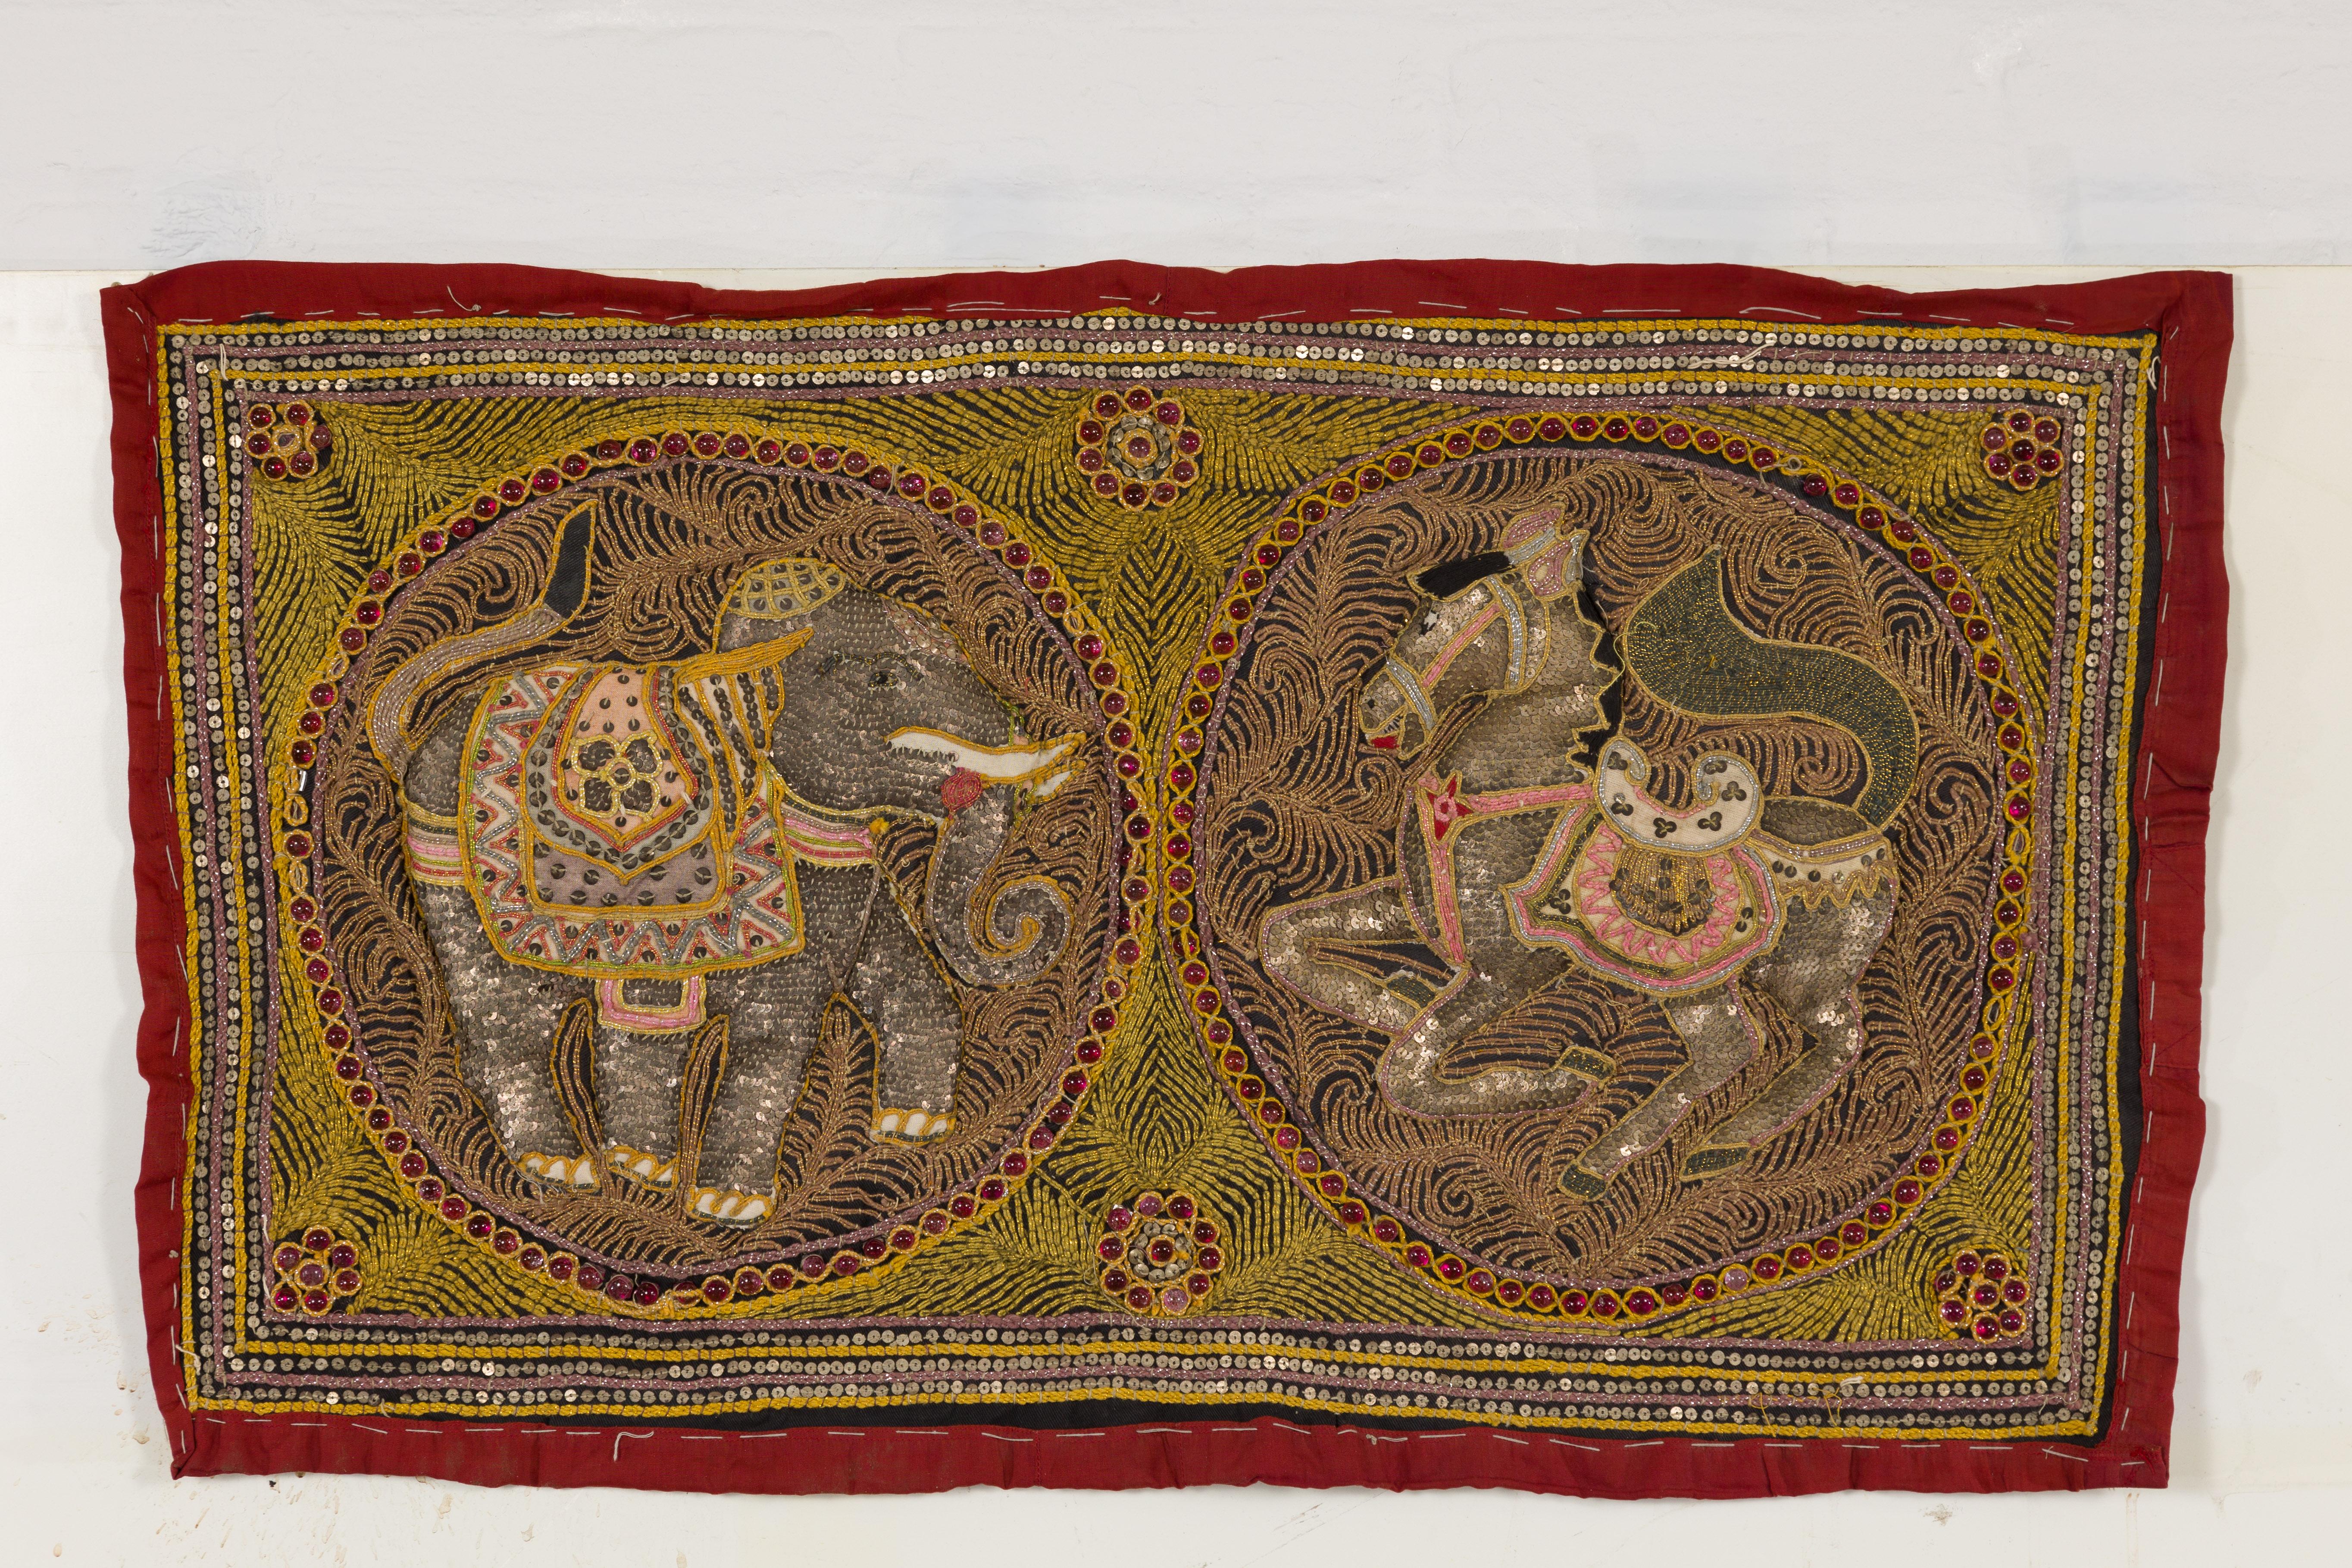 Tapisserie brodée Kalaga du XIXe siècle représentant un cheval et un éléphant avec des fils dorés et roses, des paillettes argentées et de petites perles rouges. Plongez dans la riche tapisserie culturelle de l'Orient avec cette exquise tapisserie